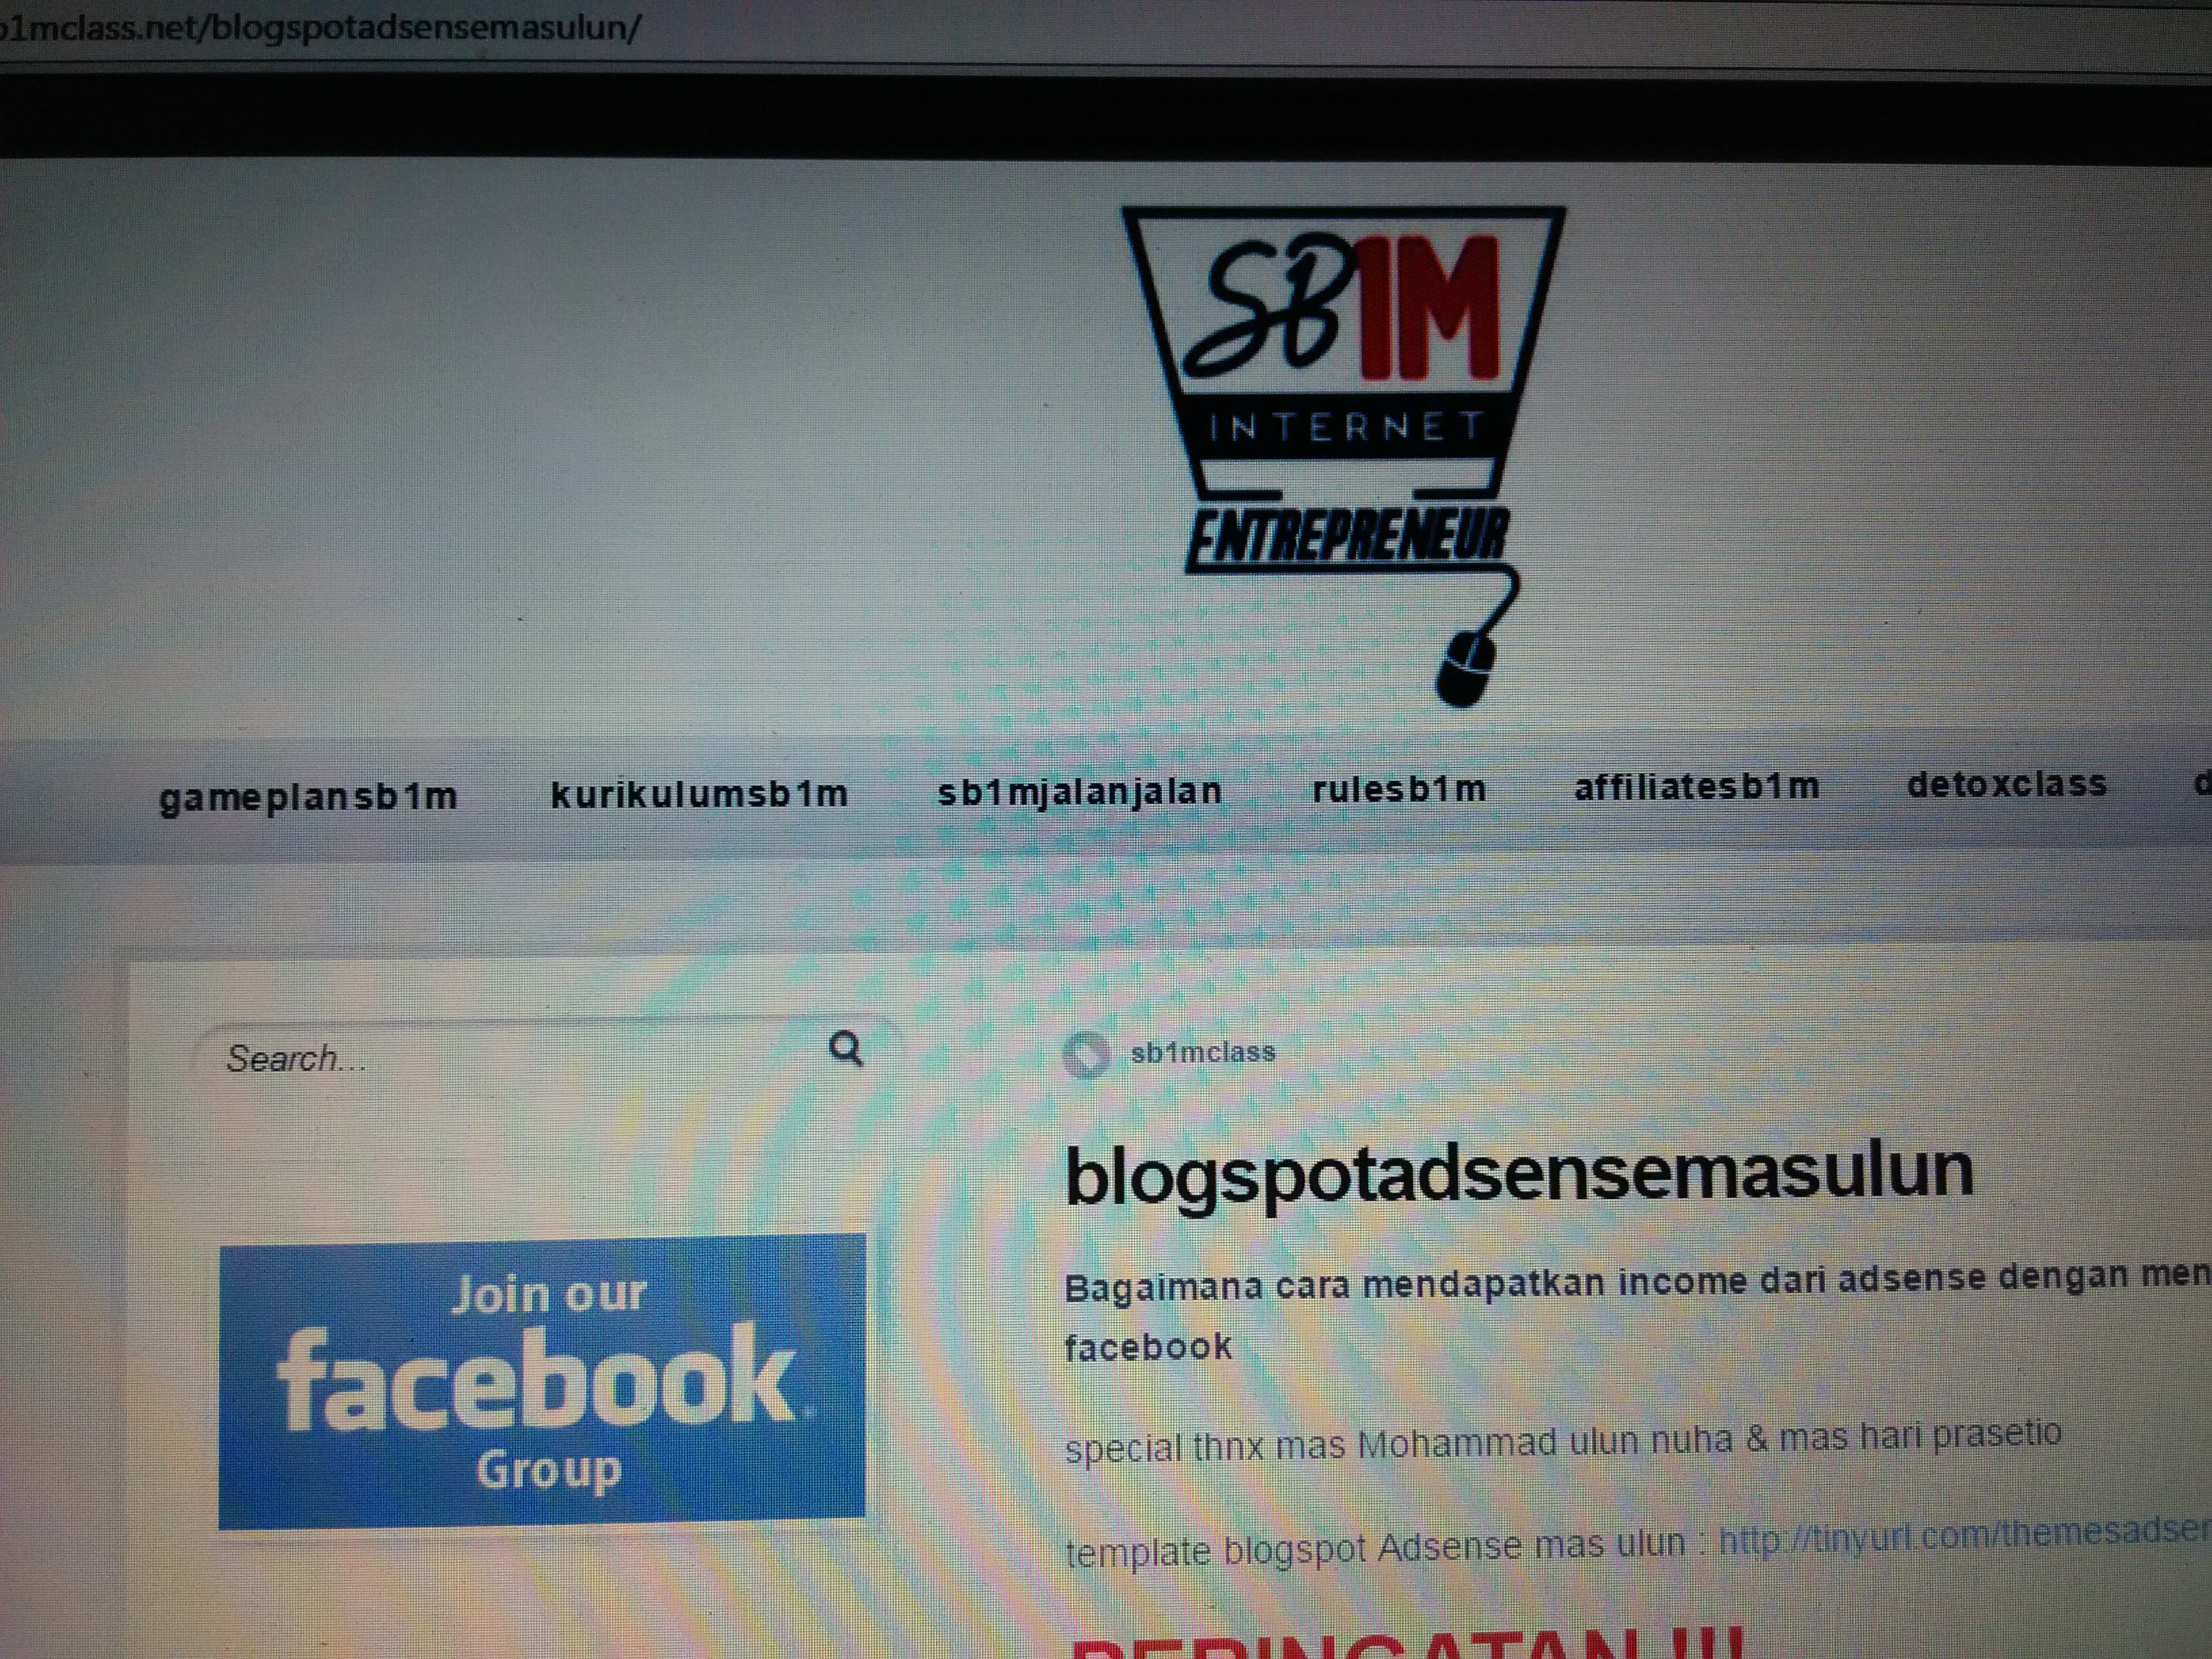 materi-pelatihan-bisnis-internet-sb1m-blogspot-adense-dengan-viral-share-fb